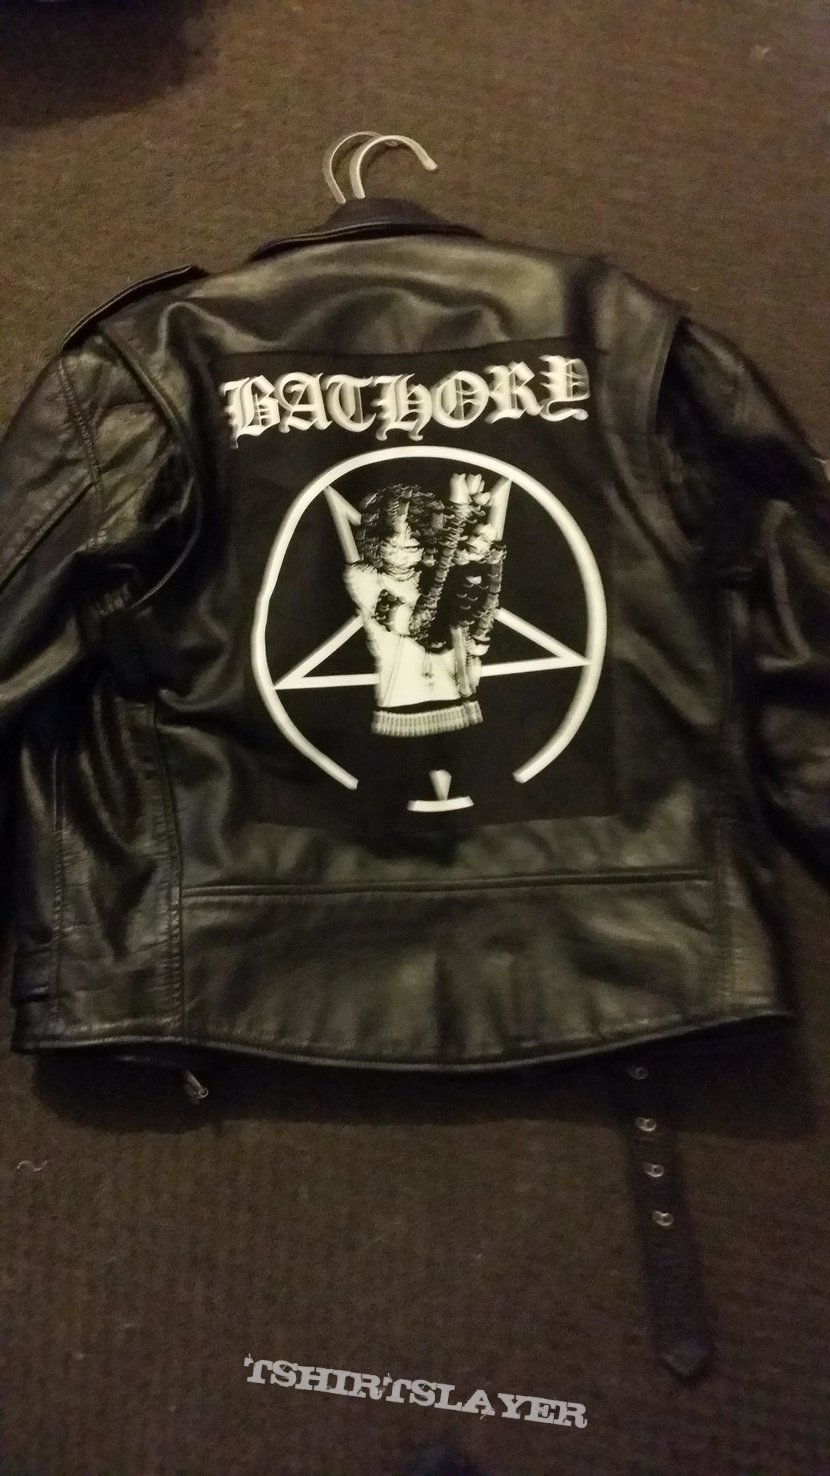 Bathory Satanic Warmaster Marduk Leather Jacket, sleeve symbols painted, backpatch